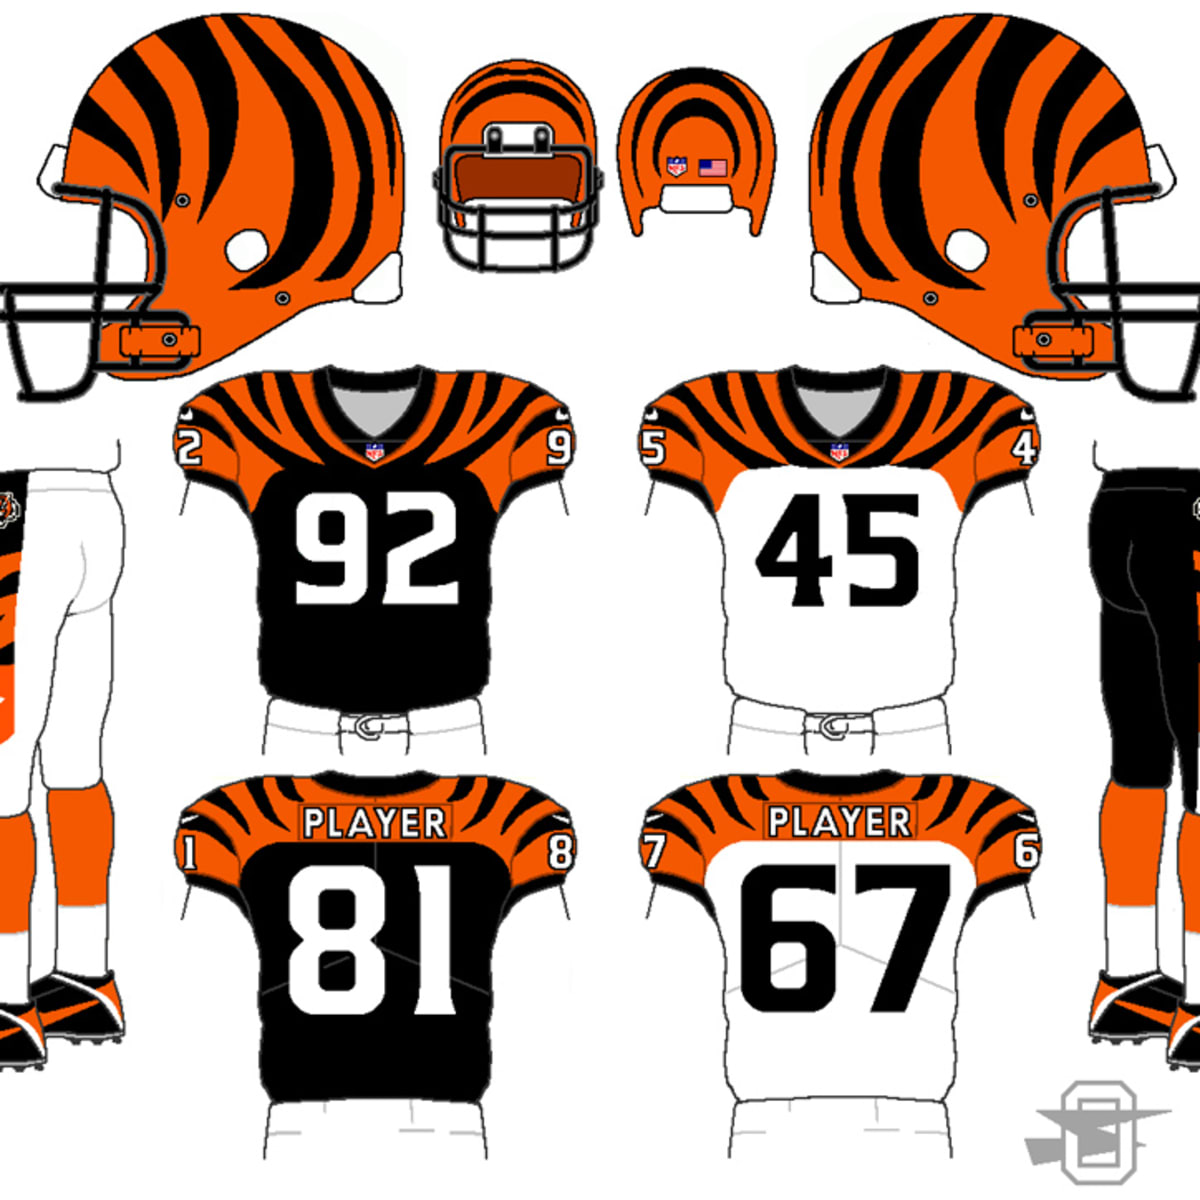 Cincinnati Bengals fans float jersey redesign ideas